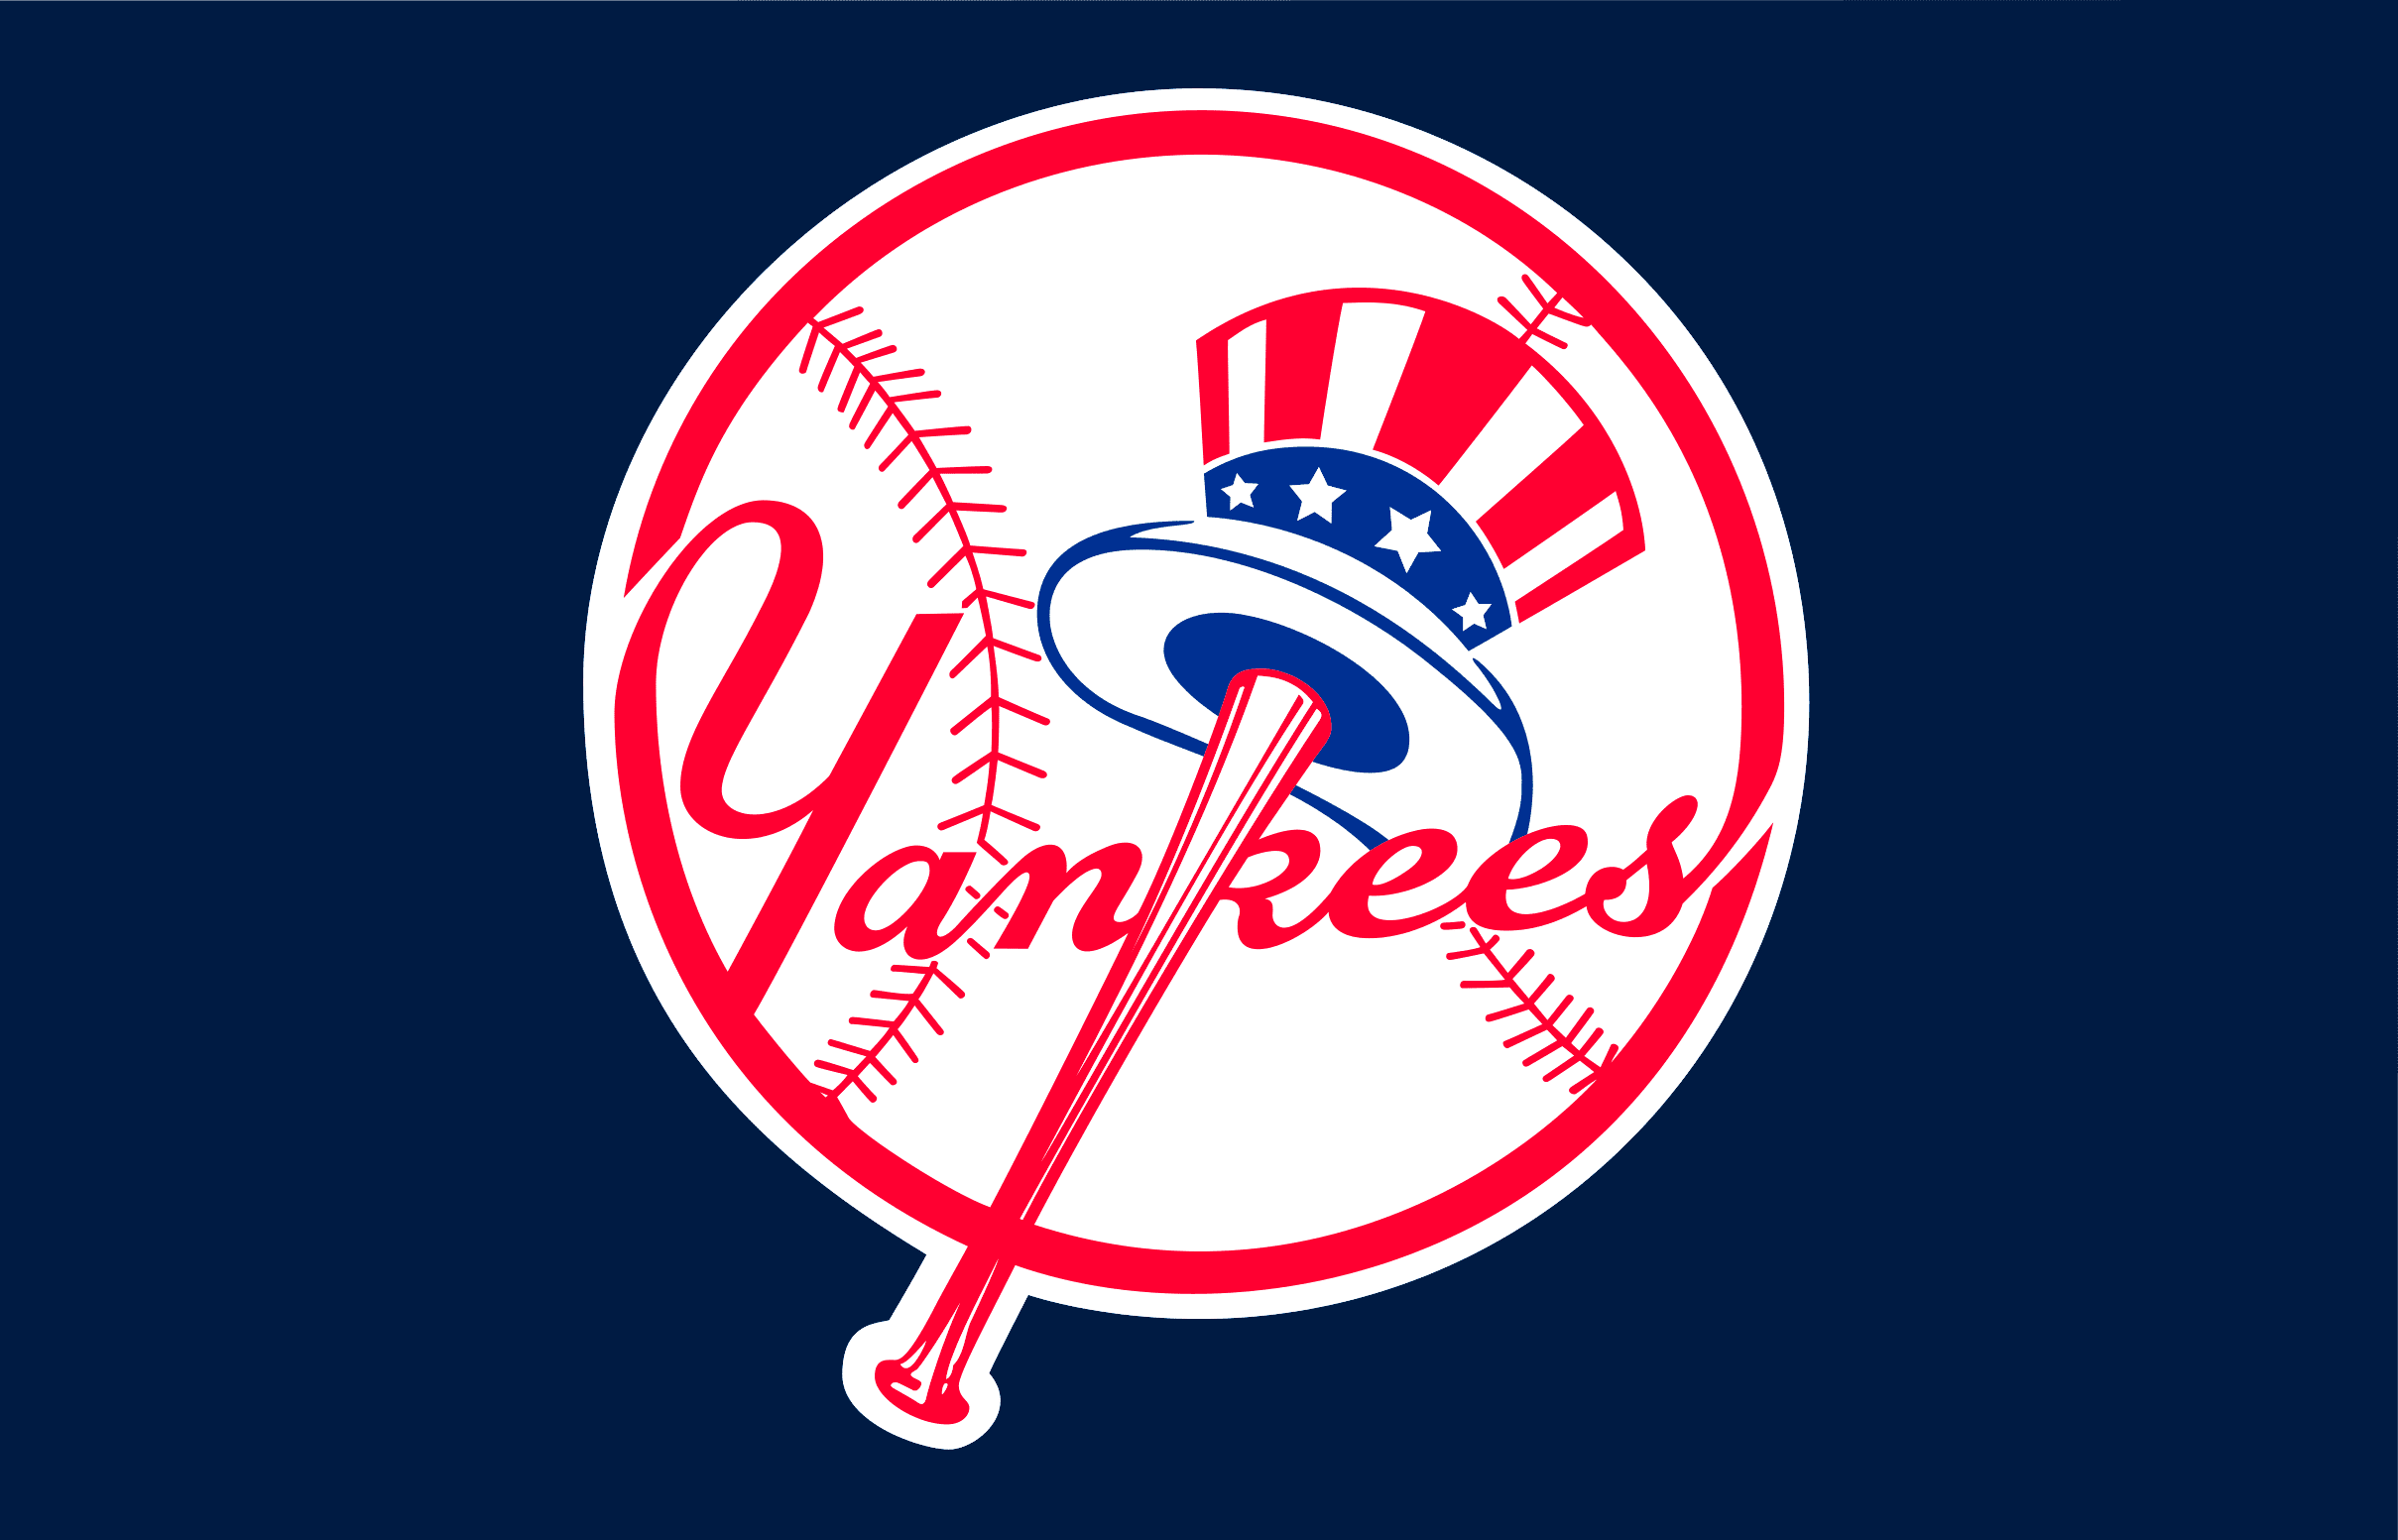 New York Yankees, New York Yankees svg, New York Yankees clipart, New York  Yankees logo